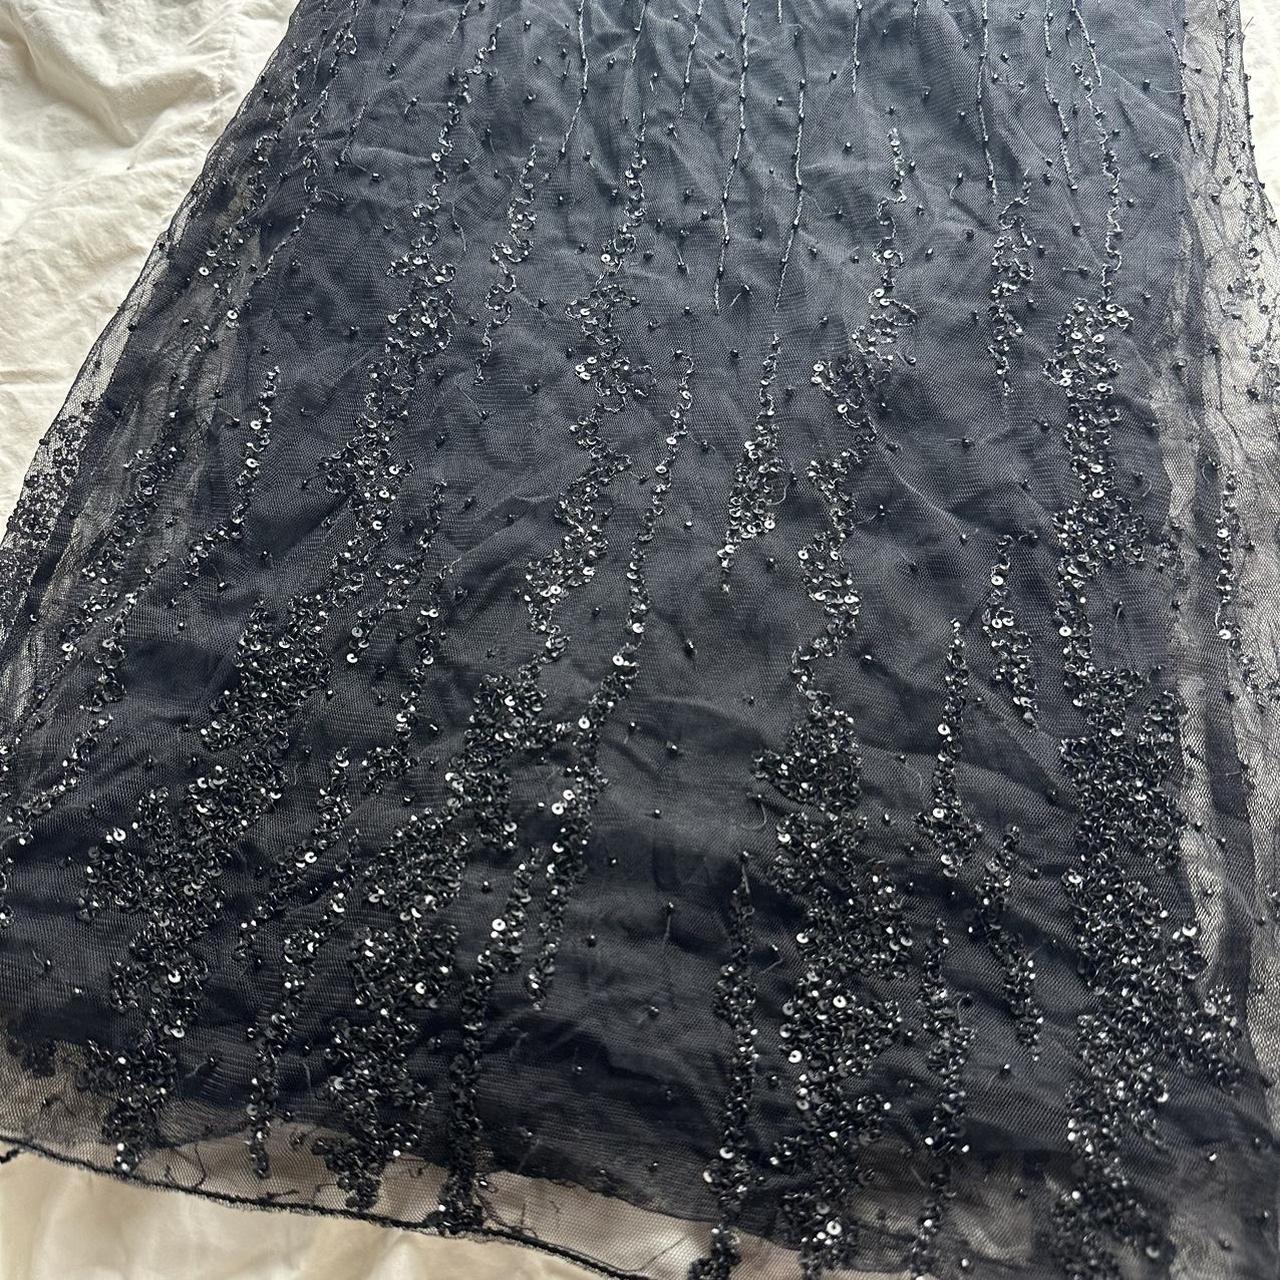 Black beaded sheer mesh double layer skirt Good... - Depop